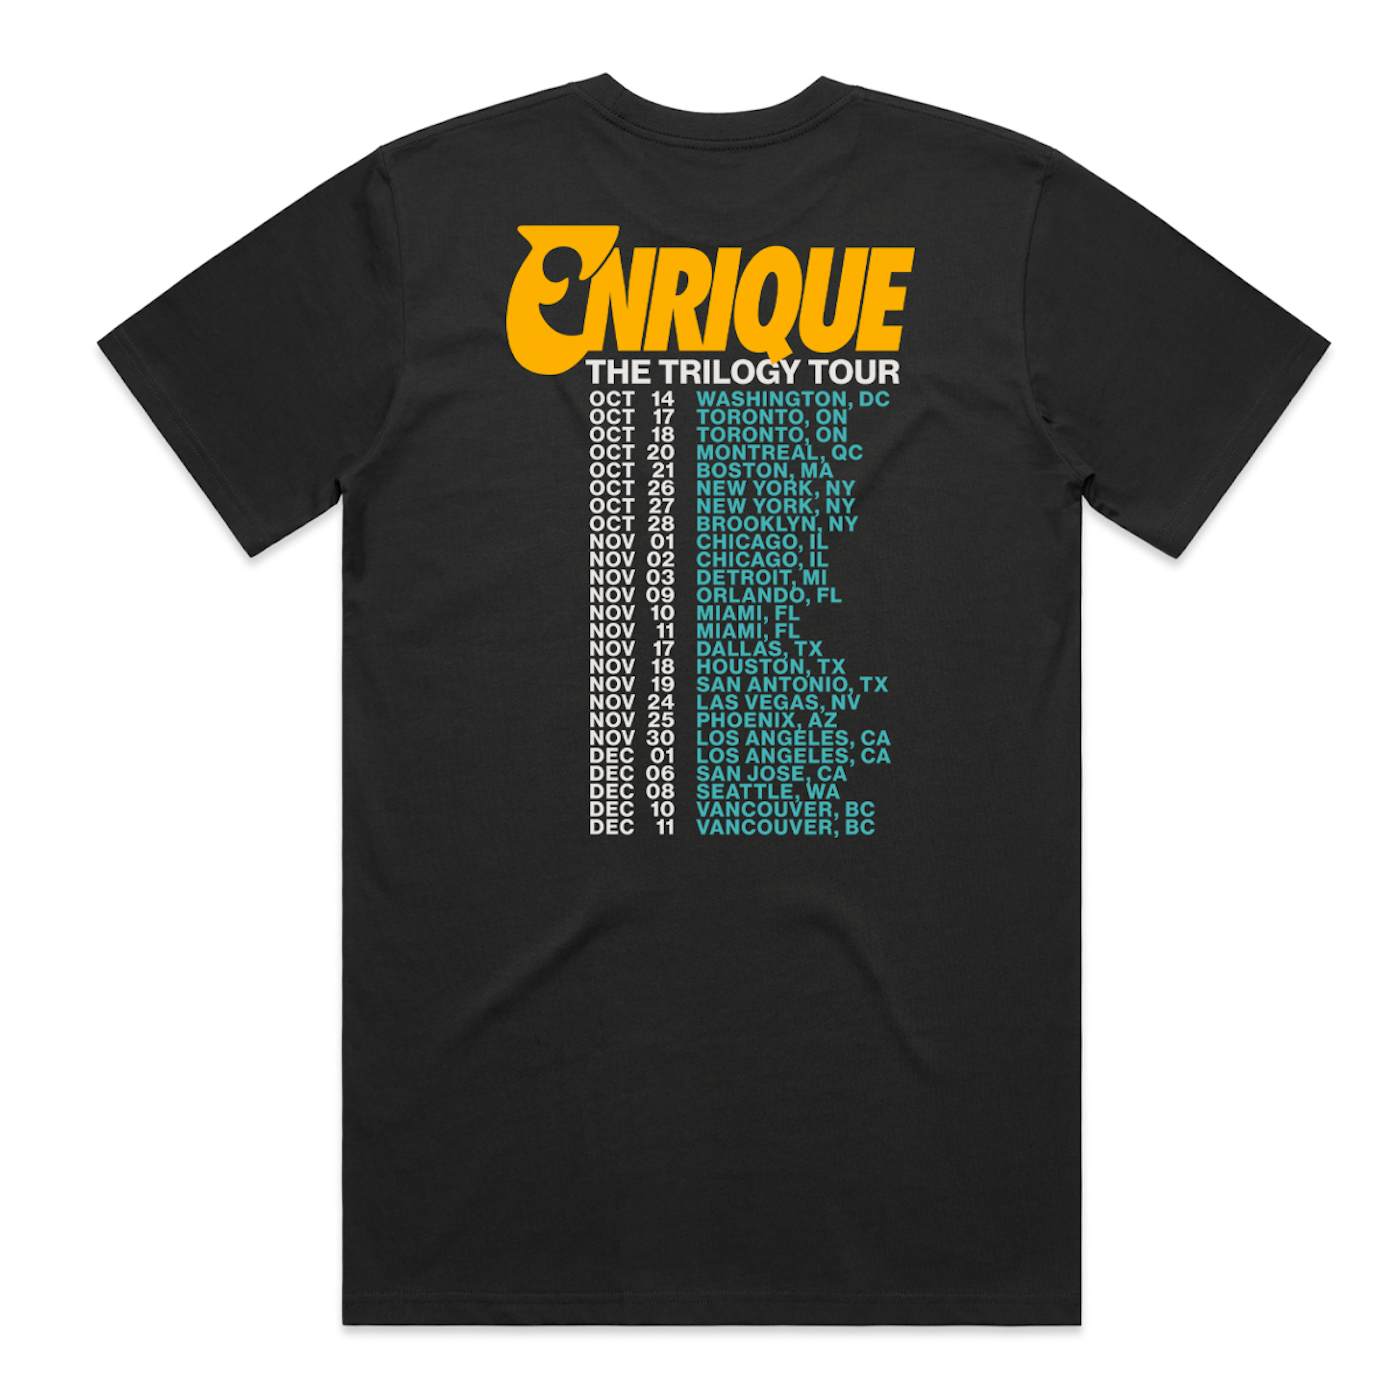 Enrique Iglesias 2023The Trilogy Tour Shirt